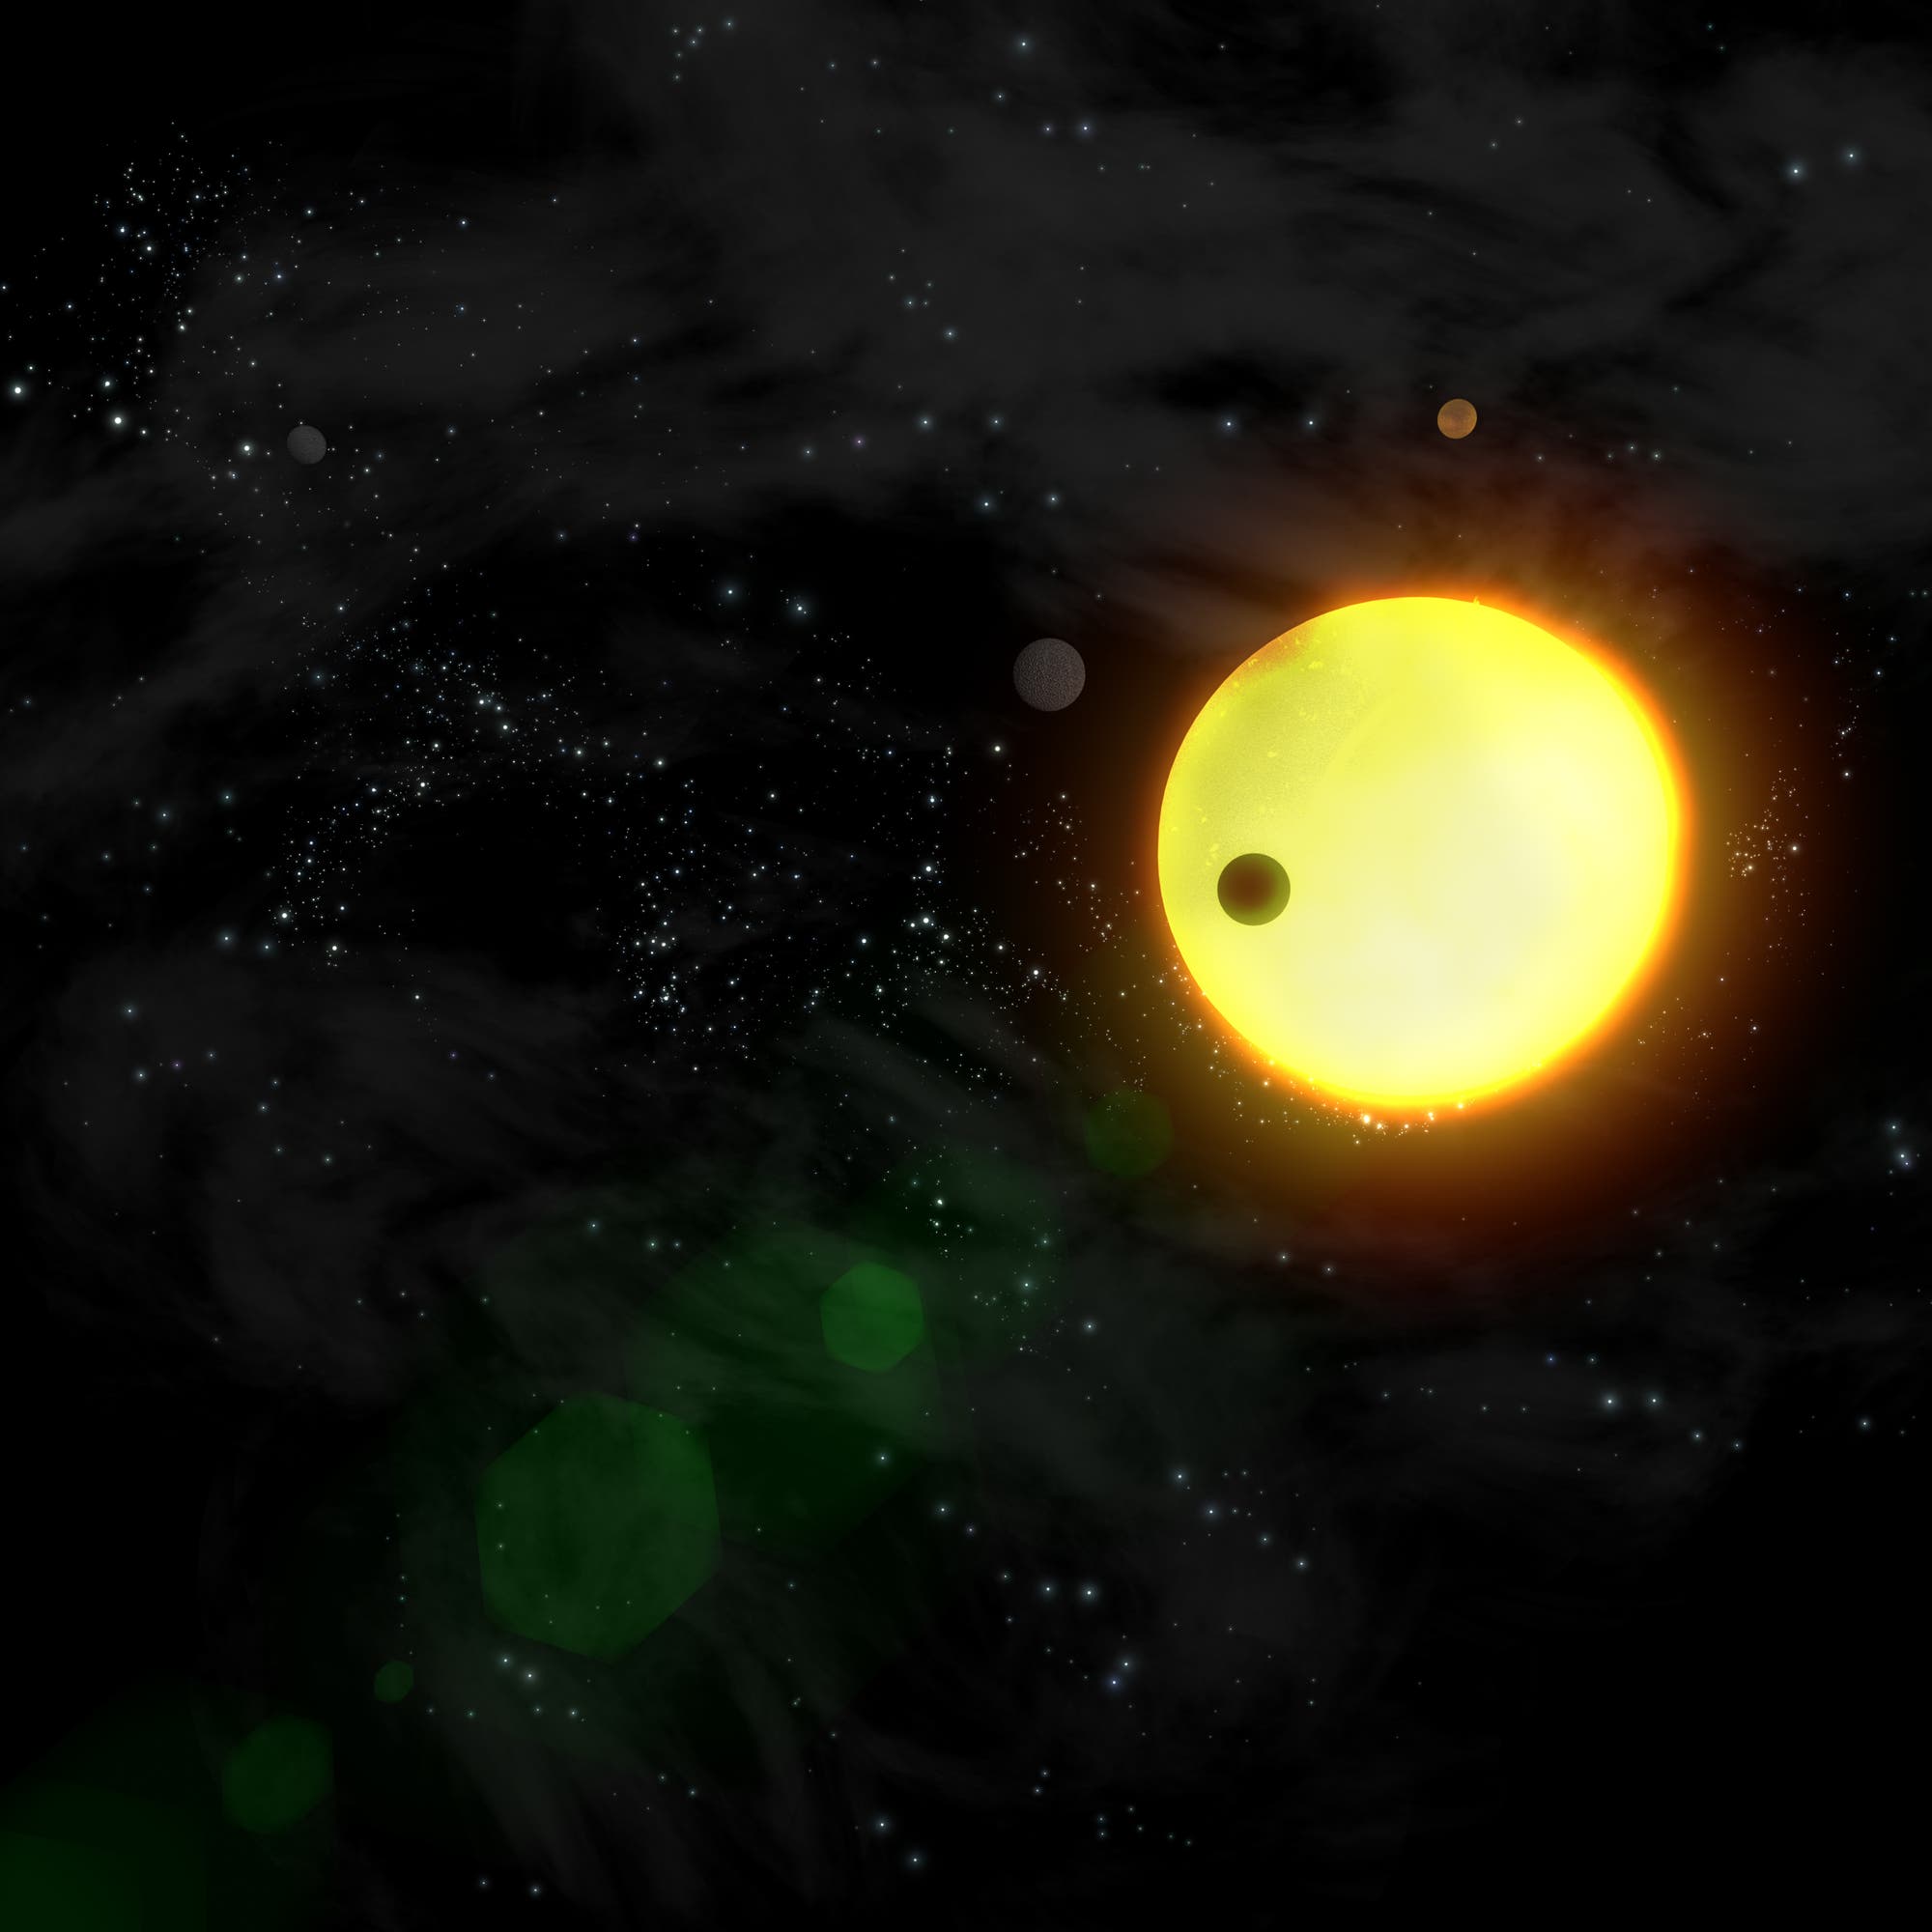 Ein fremdes Sonnensystem in einer künstlerischen Darstellung